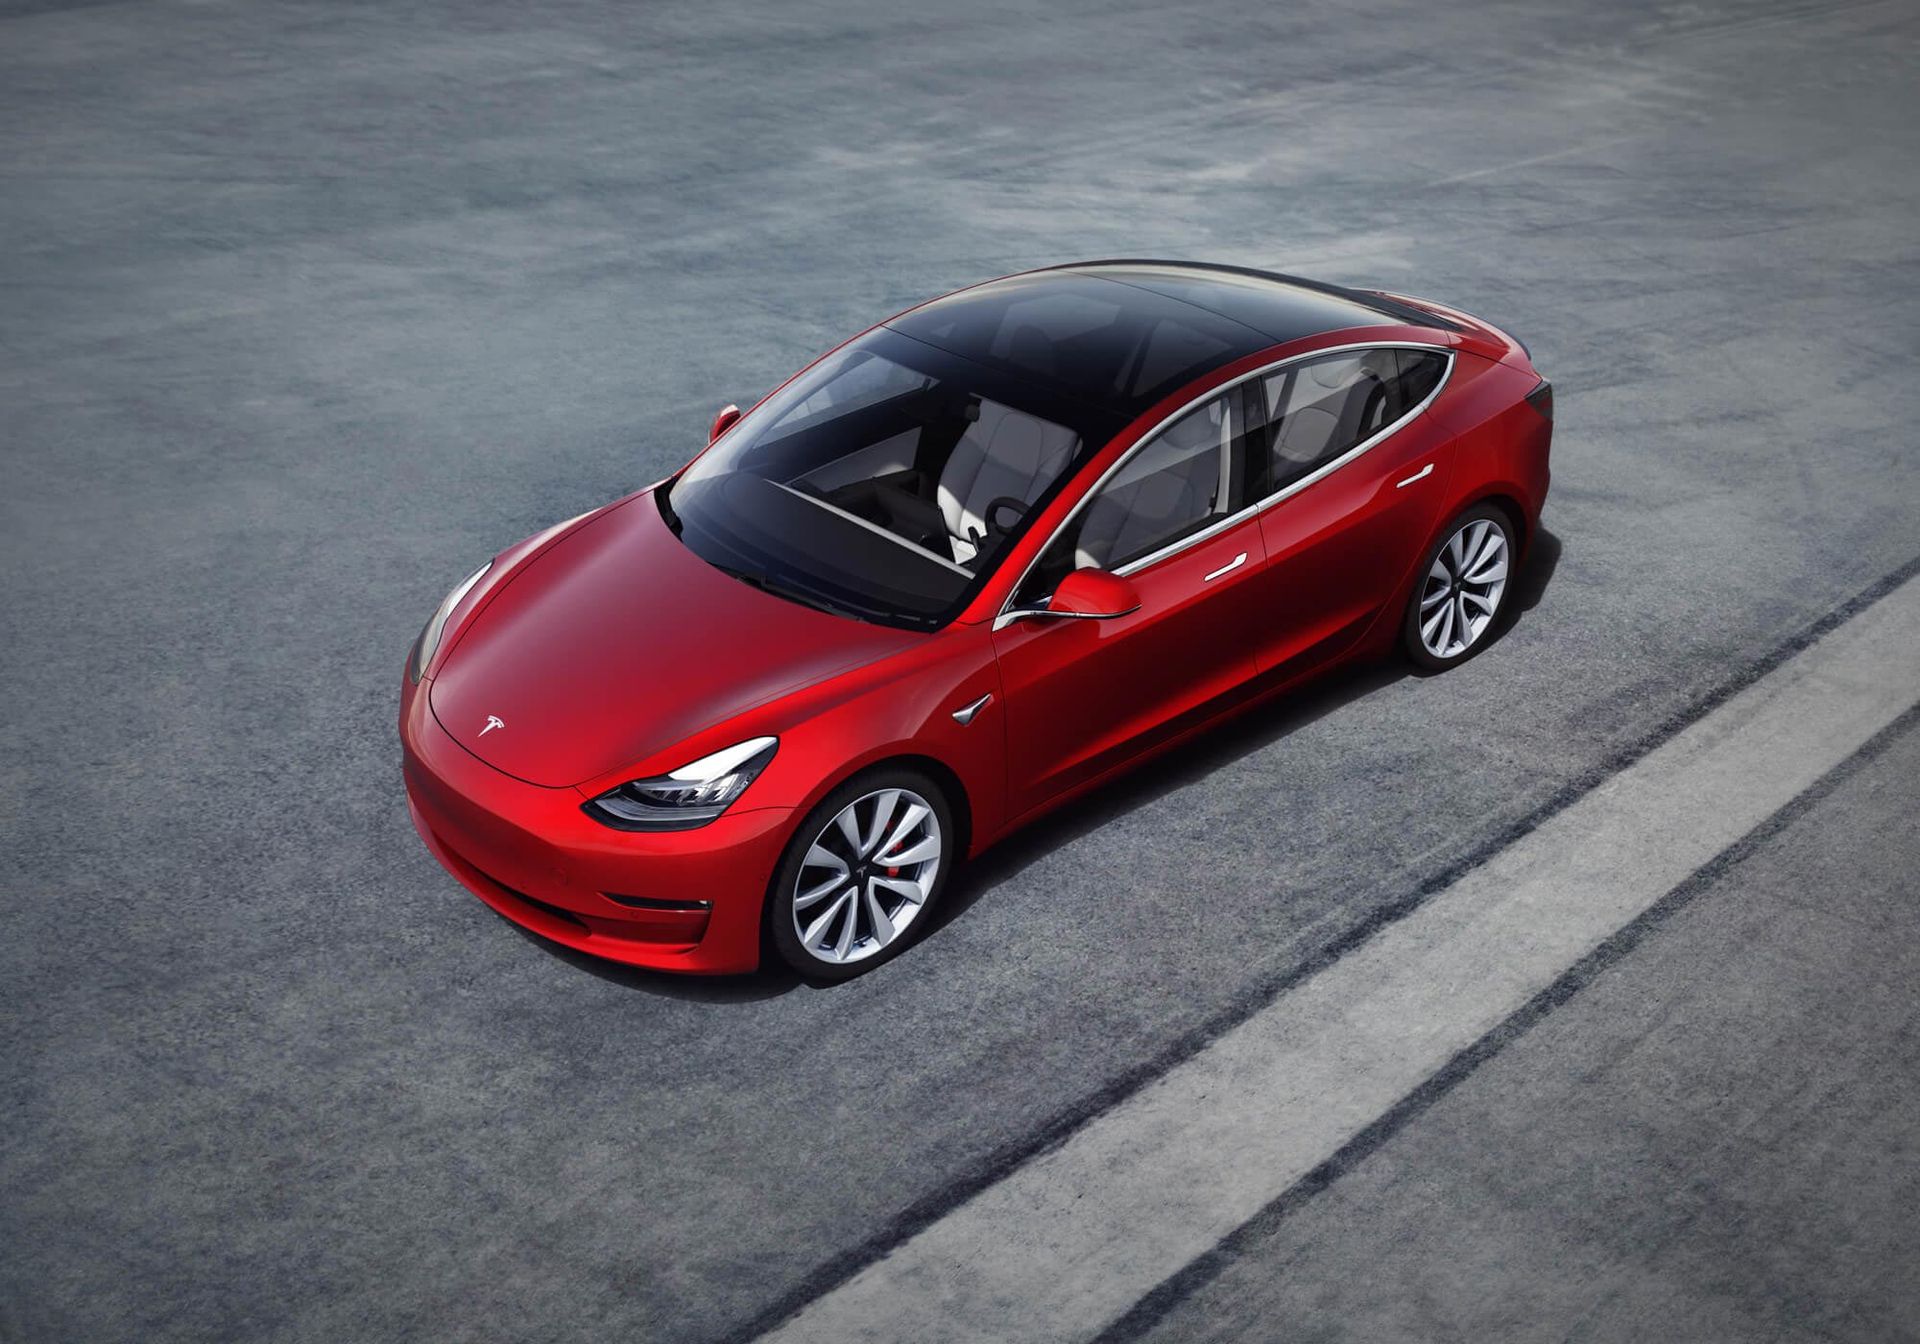 Billigaste Tesla Model 3 kommer att kosta 440.000 kr i Sverige